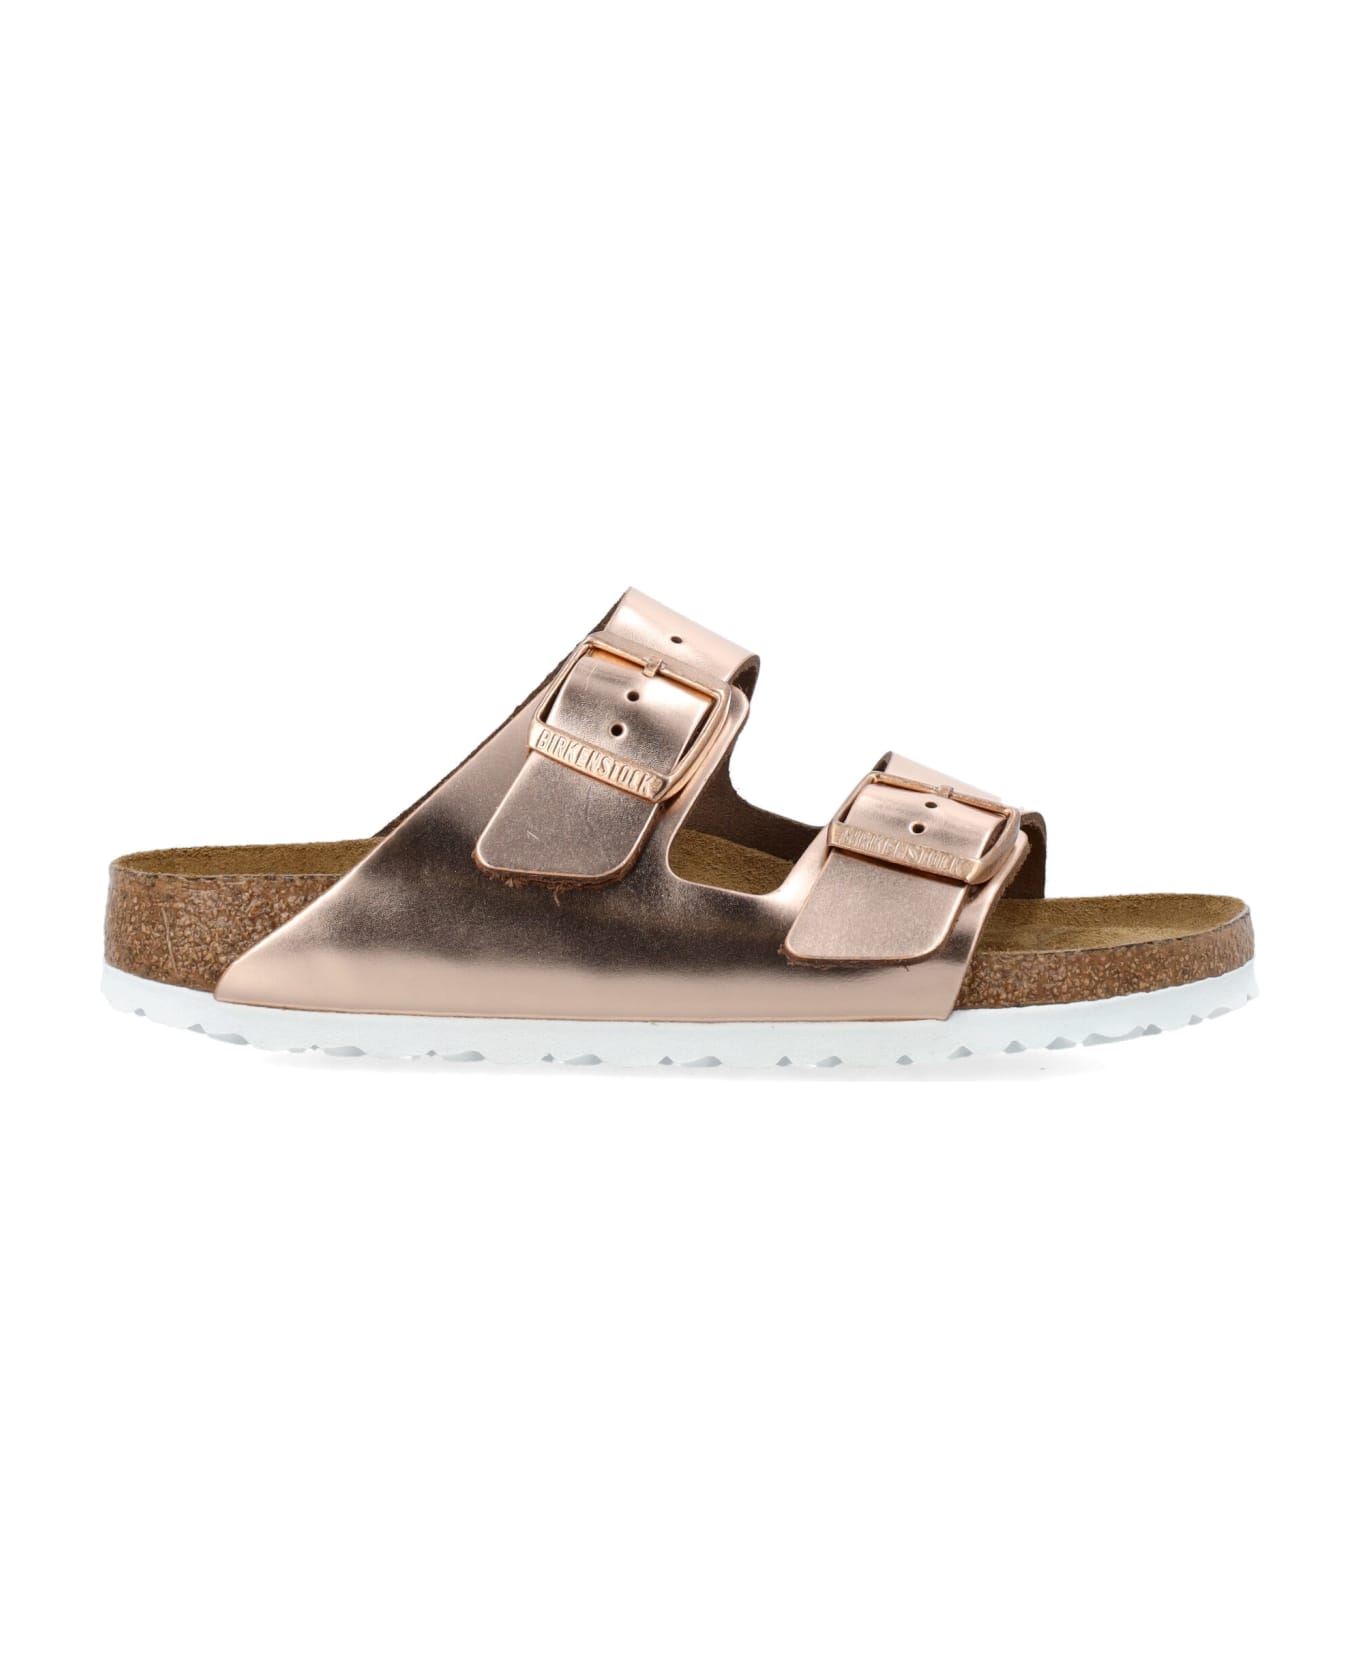 Birkenstock Arizona Metallic Sandals - COPPER